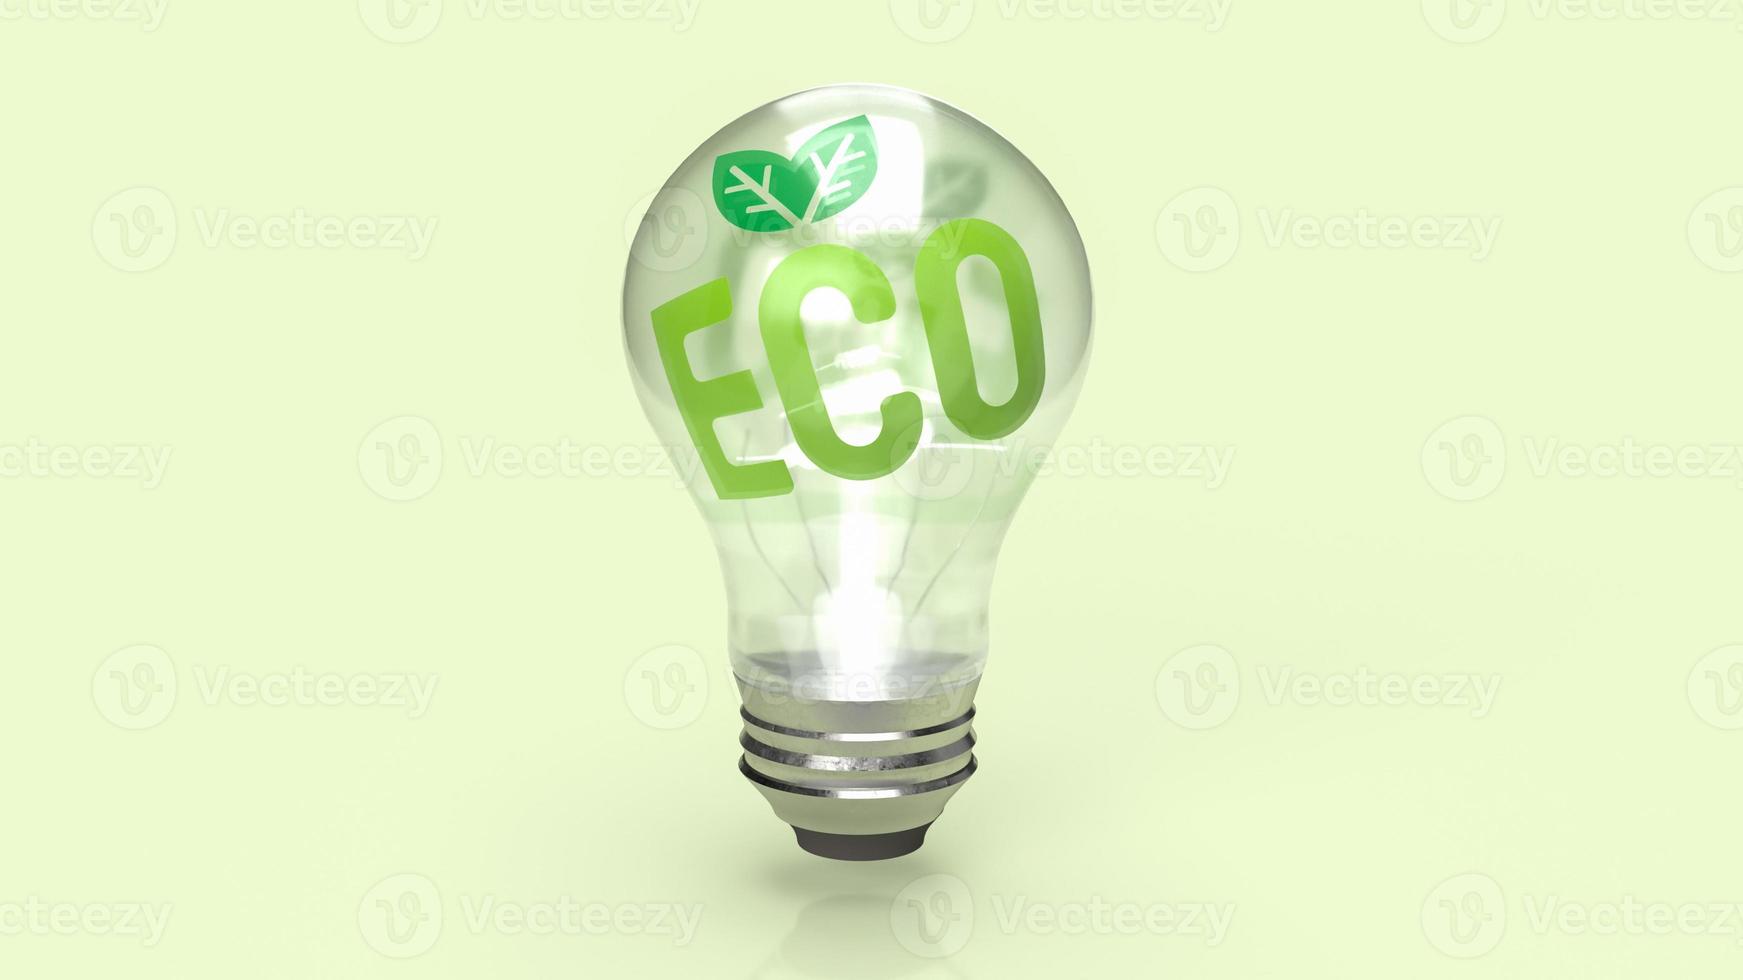 le symbole éco sur l'ampoule pour l'écologie ou le concept d'environnement rendu 3d photo